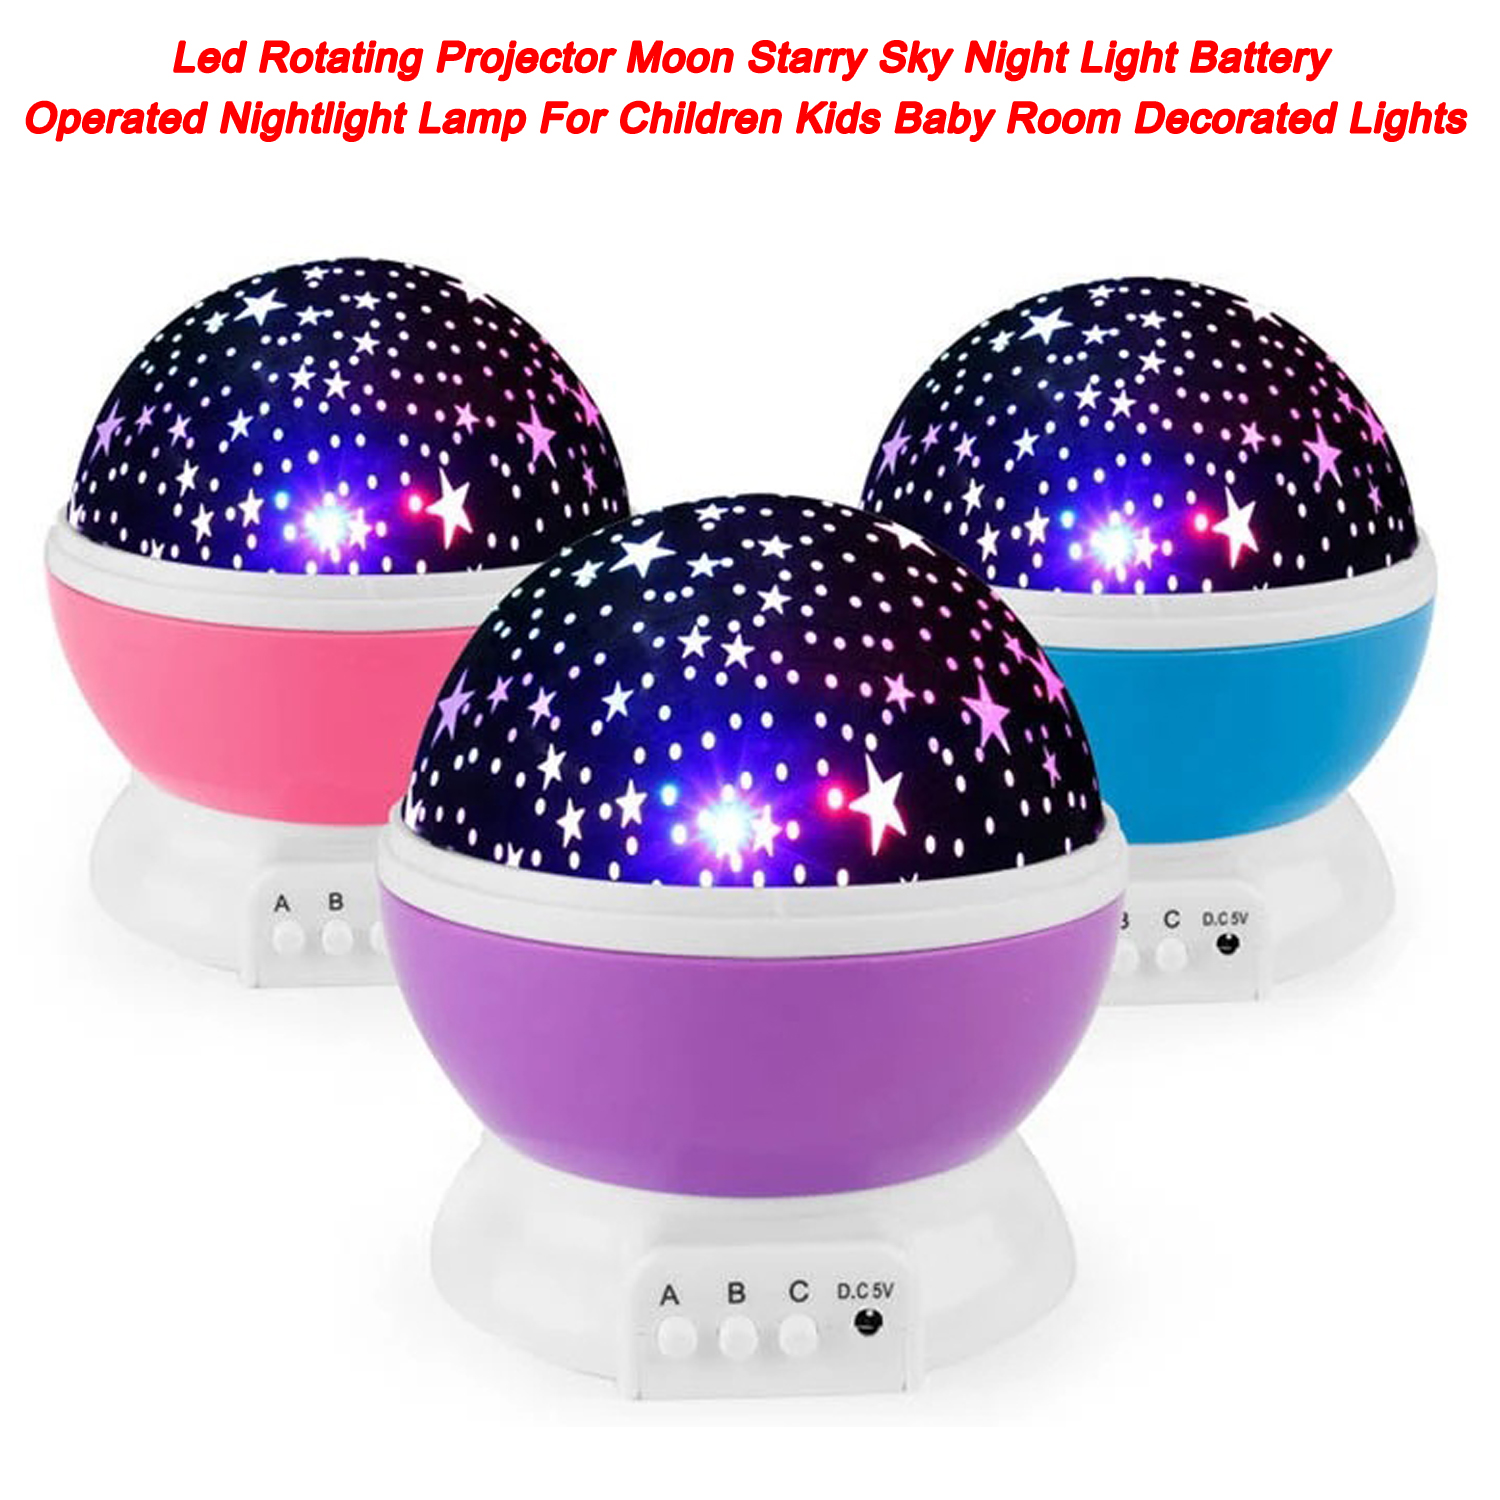 Proyector giratorio Led Luna cielo estrellado luz de noche lámpara de luz nocturna con pilas para niños habitación de bebé luces decoradas